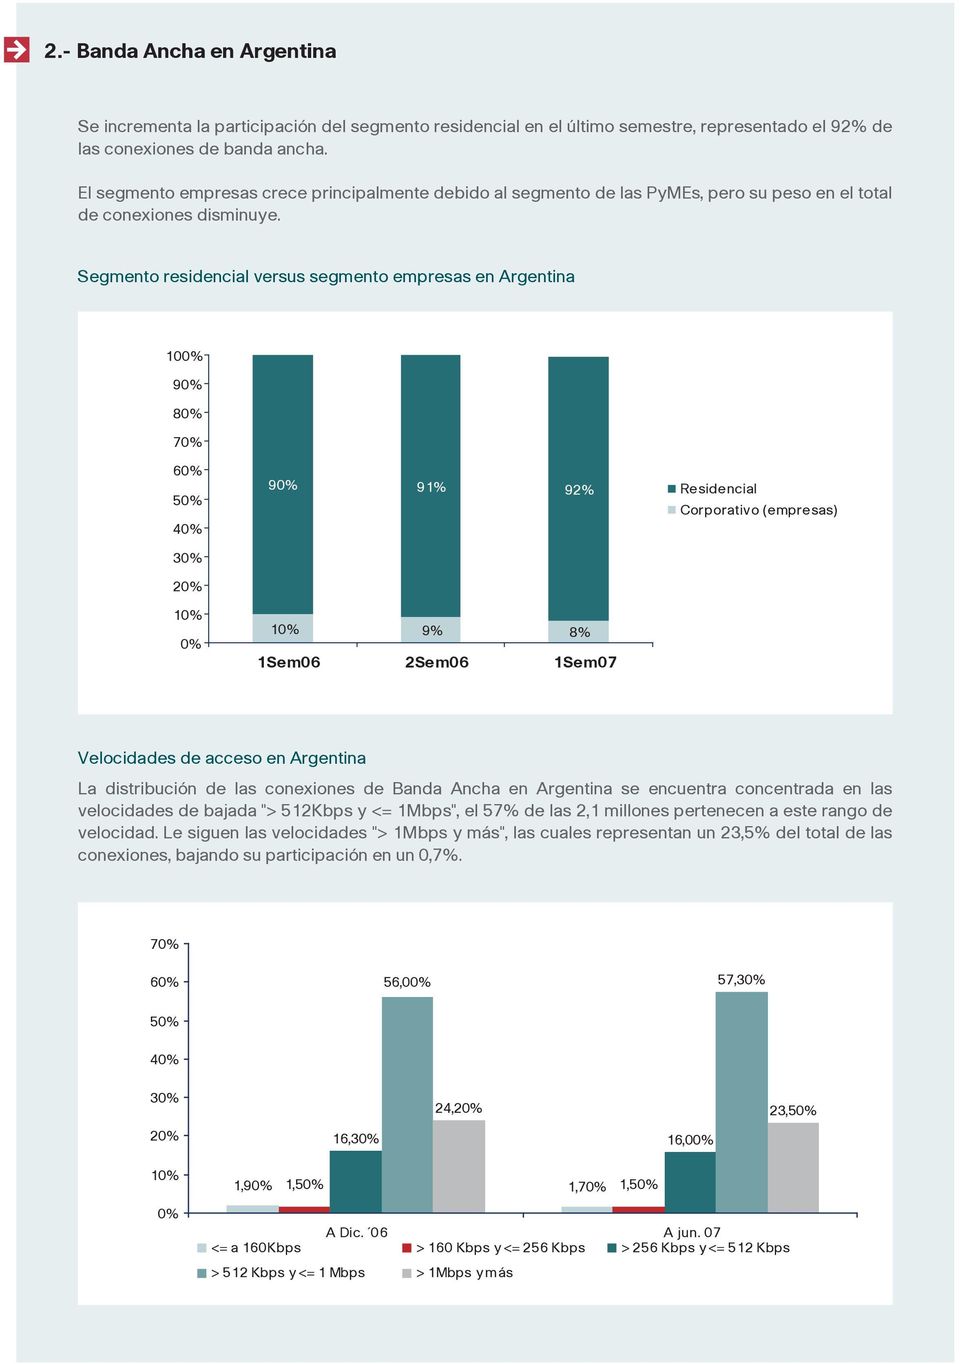 Segmento residencial versus segmento empresas en Argentina 10 9 8 7 6 5 4 9 91% 9 Residencial Corporativo (empresas) 3 2 1 1 9% 8% 1Sem06 2Sem06 1Sem07 Velocidades de acceso en Argentina La